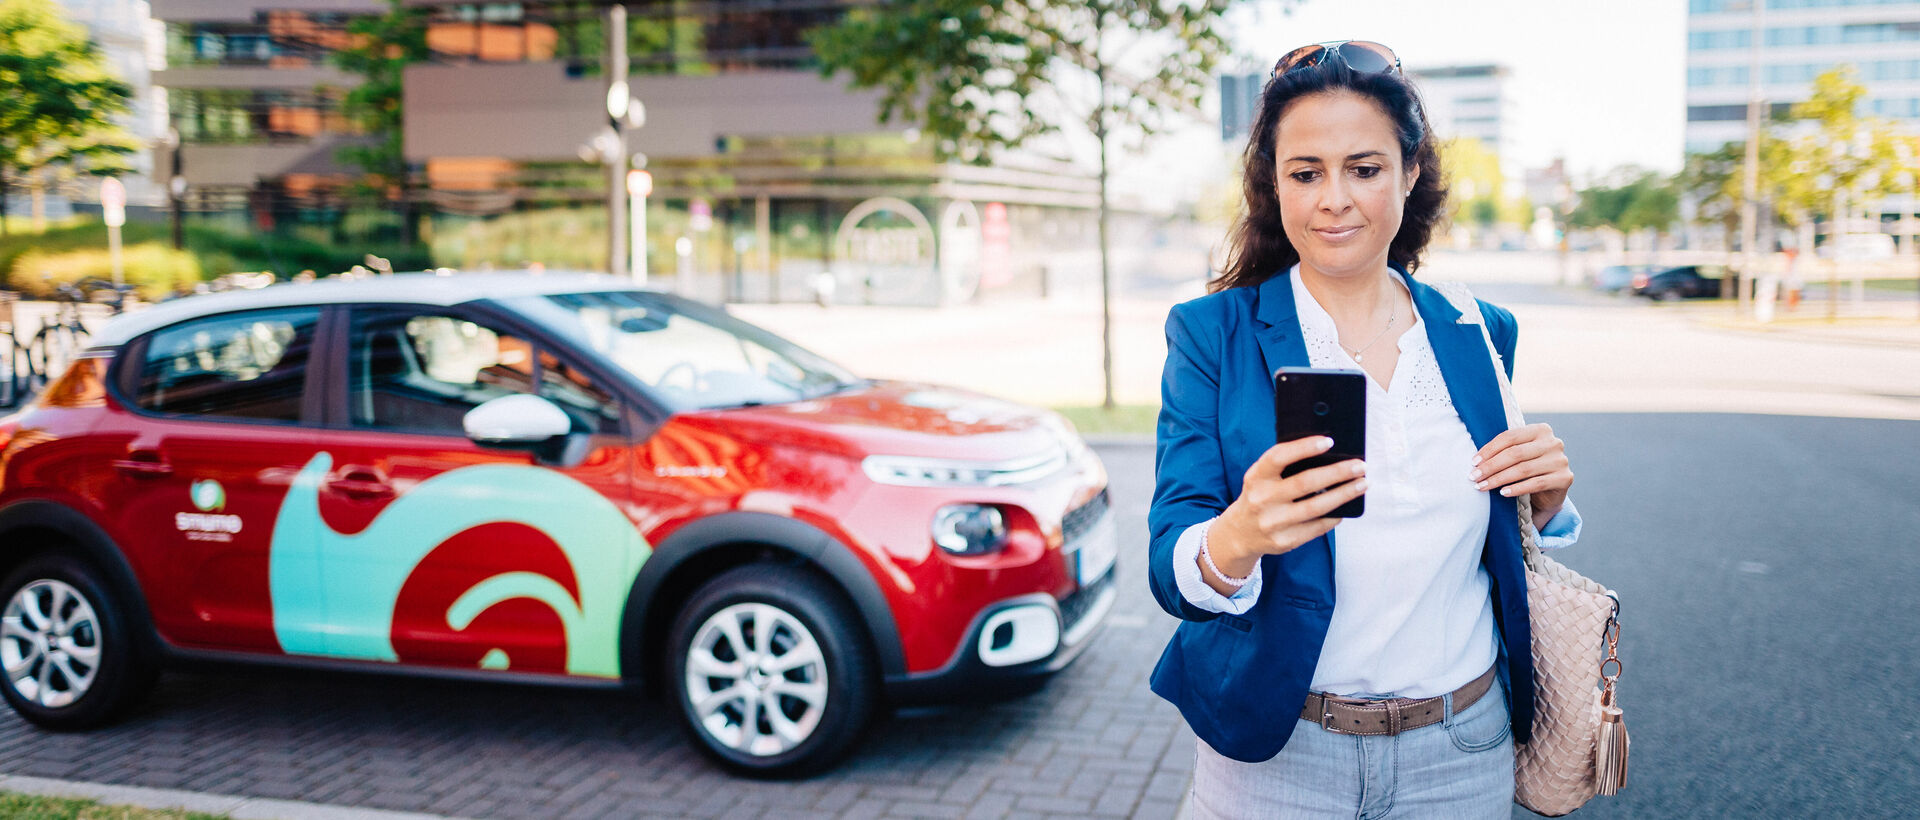 Im Vordergrund: Frau schaut auf Smartphone, im Hintergrund ein rotes smumo-Auto vor modernem Bürogebäude